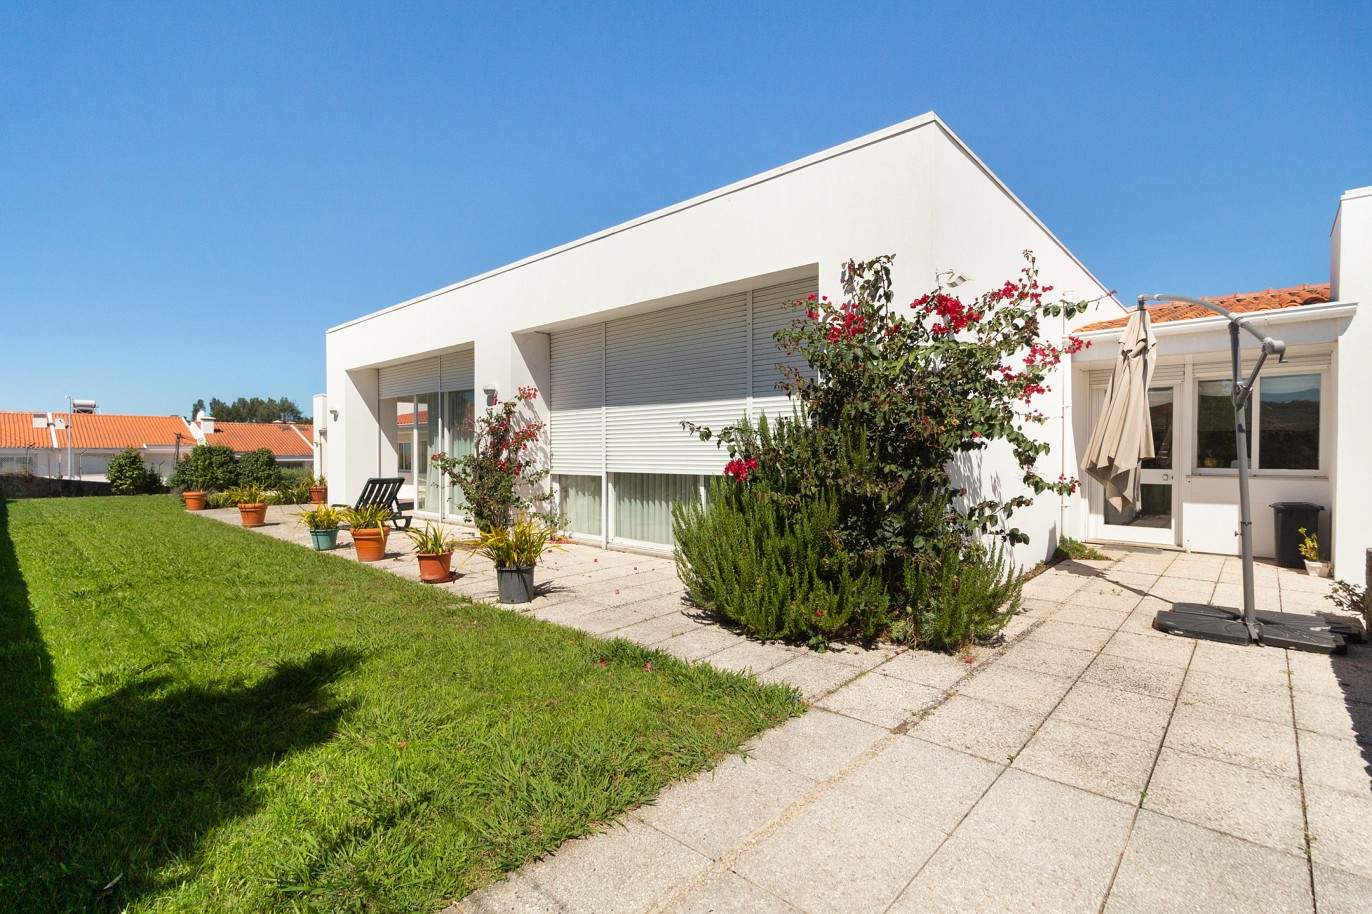 Villa con jardín, en venta, en Carvalhos, Vila Nova de Gaia, Oporto, Portugal_208037